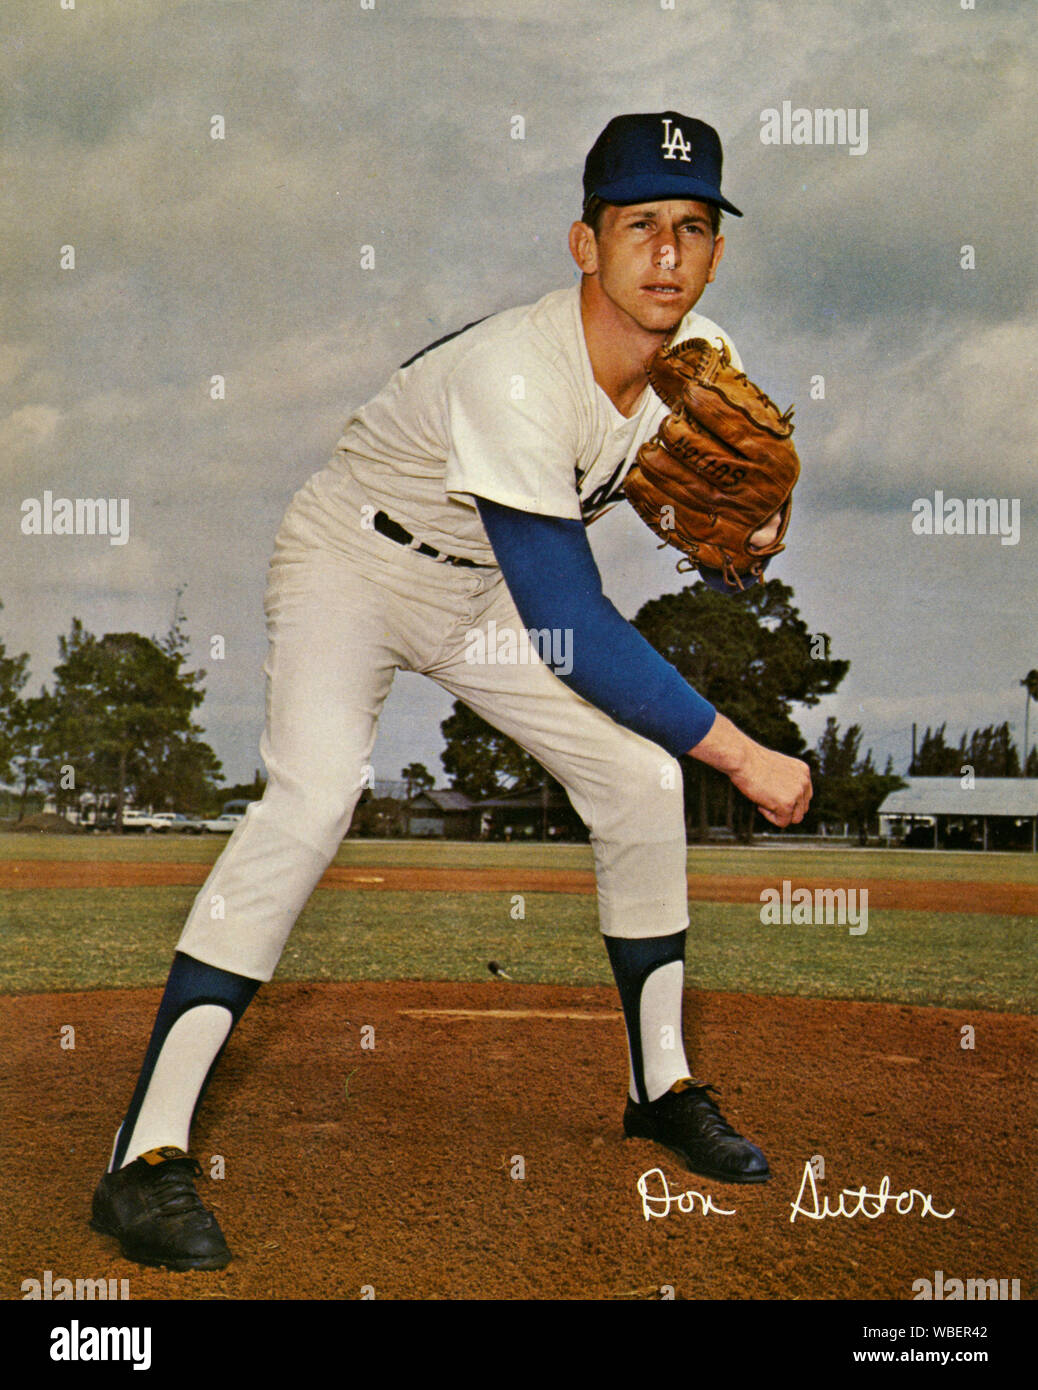 Don Sutton, le lanceur étoile pour les Dodgers de Los Angeles dans les années 1970 pose pour une photo souvenir sur le domaine de l'installation d'entraînement de printemps des dodgers puis à Vero Beach, FL Banque D'Images